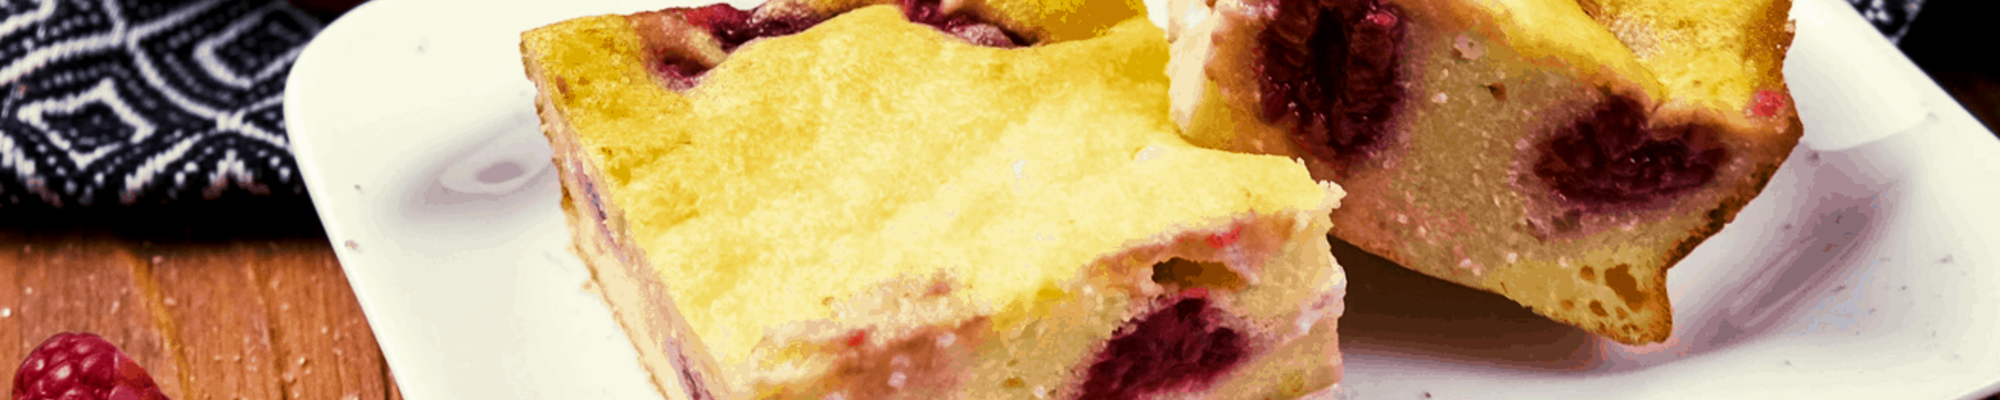 Krupicovo-tvarohový koláč s ovocím, bielkovinami, malým množstvom kalórií a brutálnou chuťou (Videorecept)